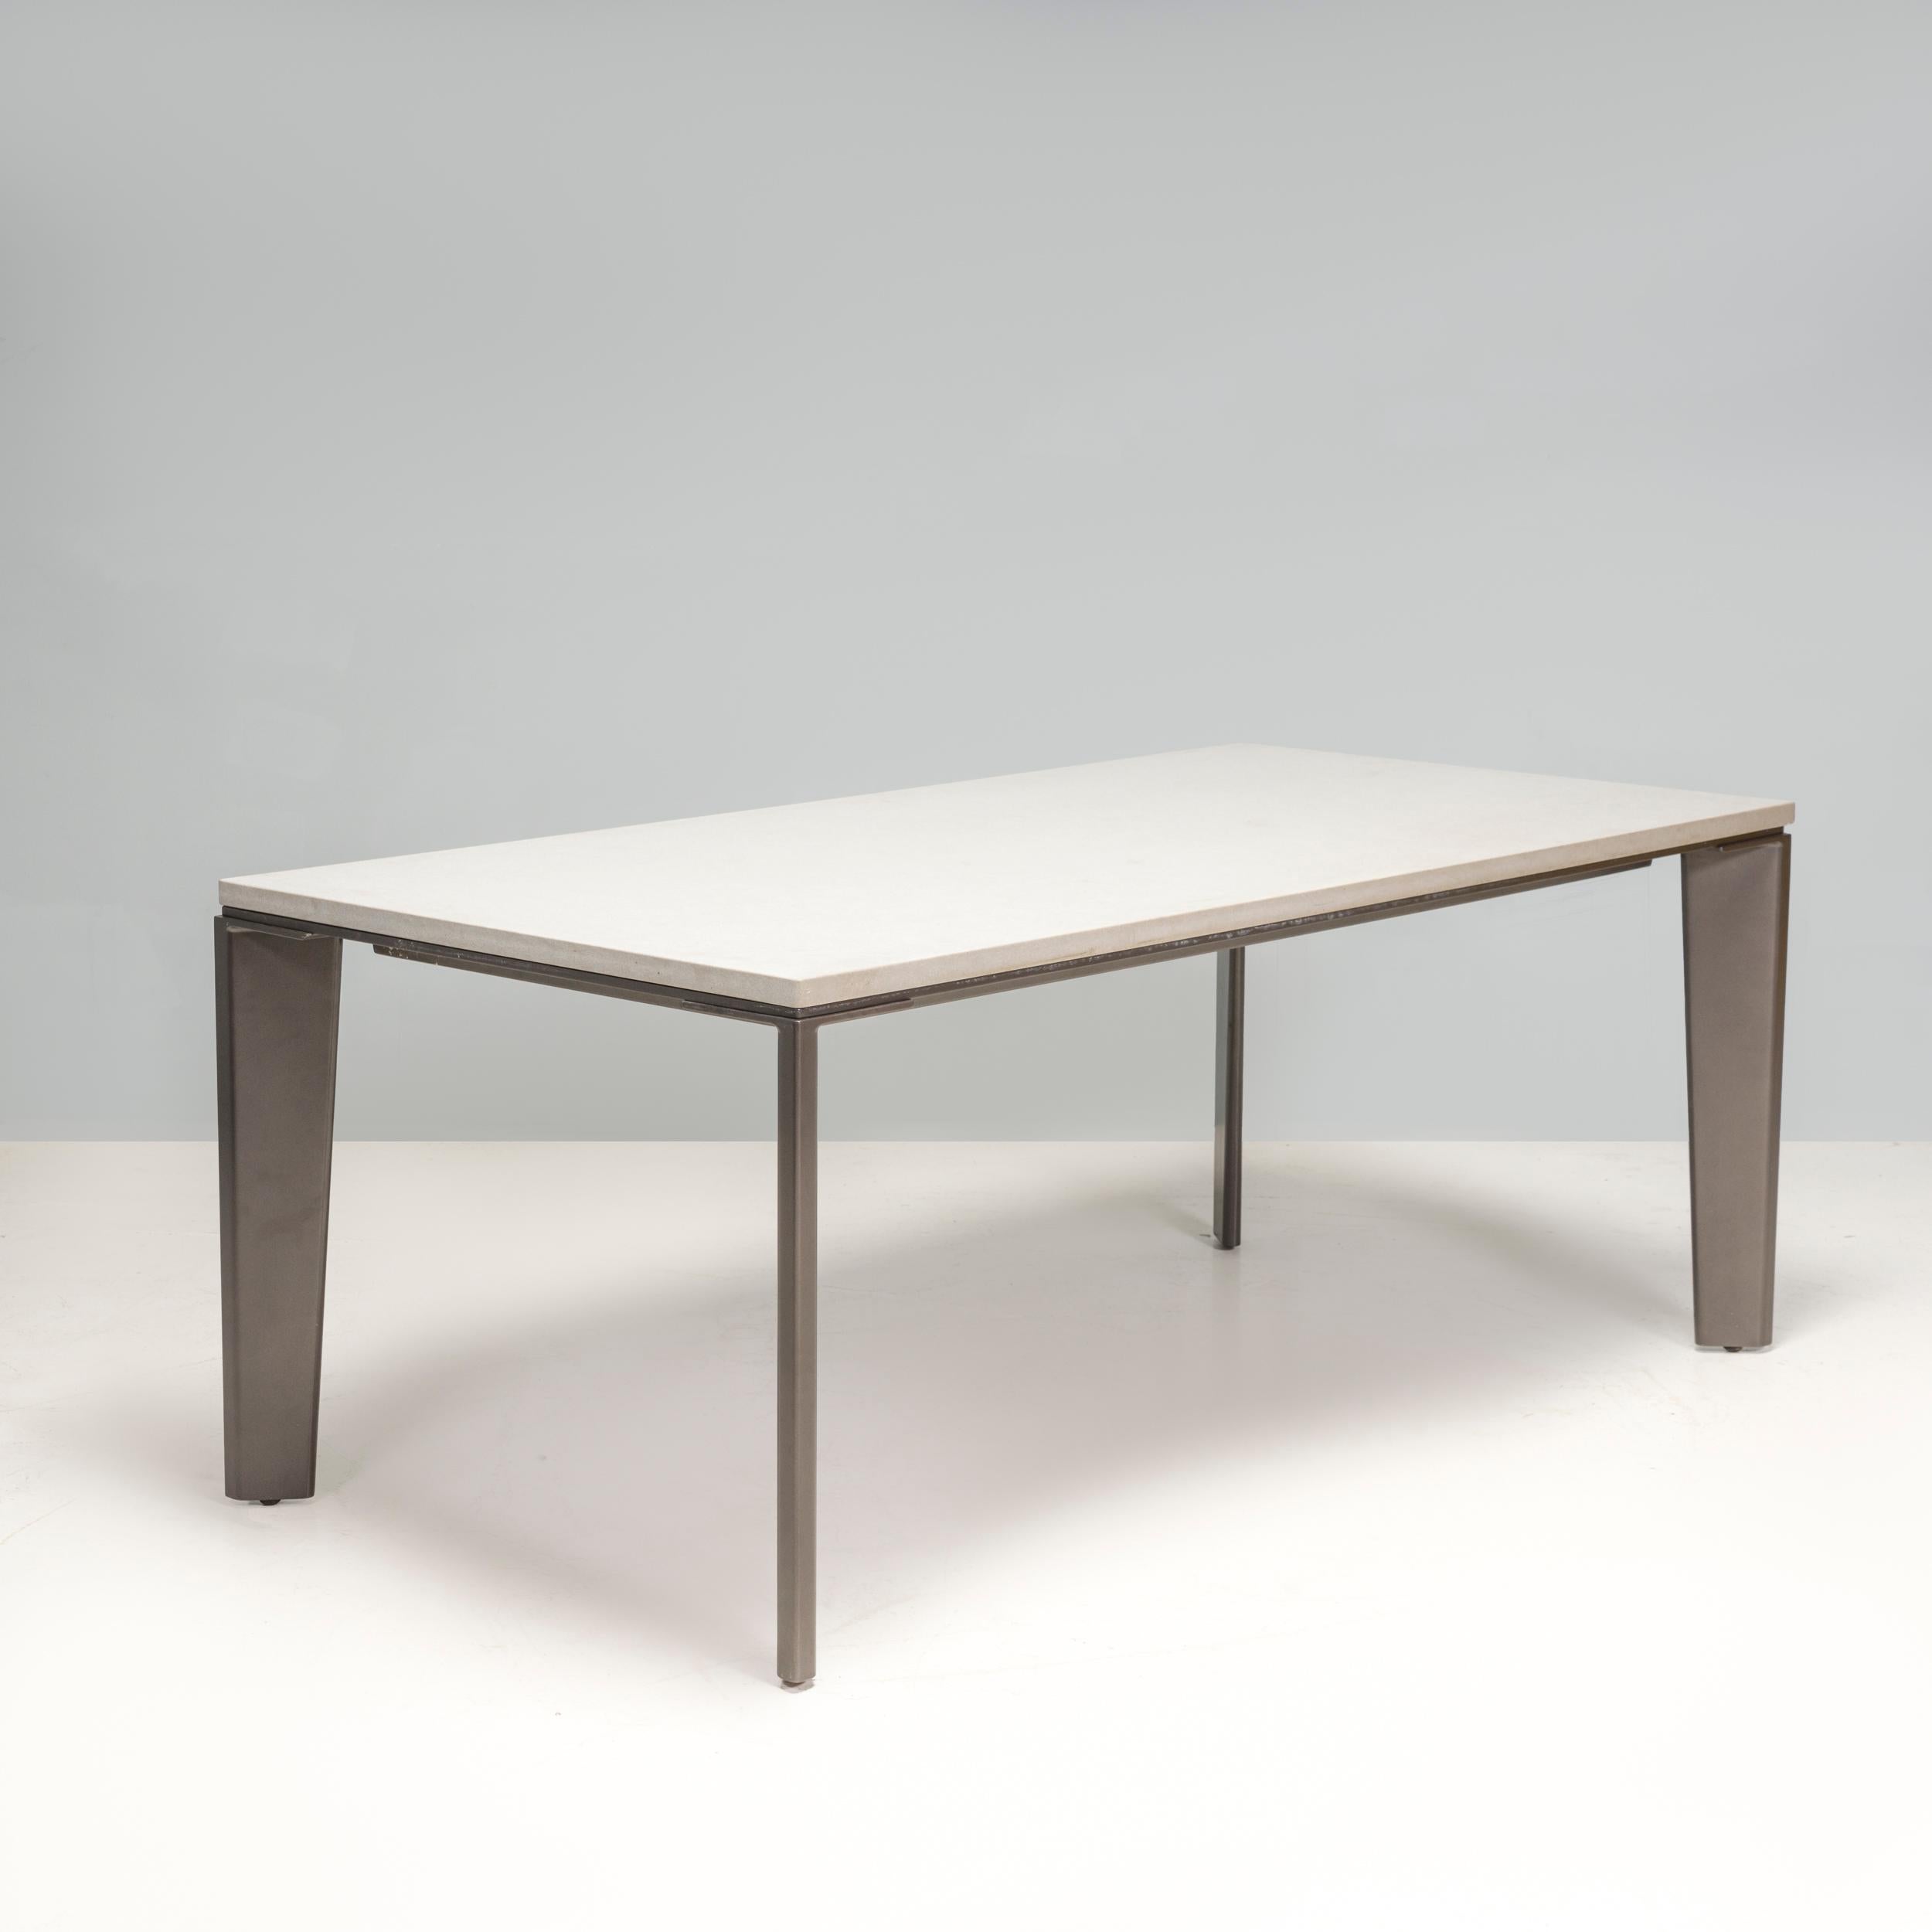 Cette table à manger d'extérieur Keel a été conçue par Holly Hunt et fabriquée en 2022. D'une sophistication décontractée et d'une esthétique moderne, il présente une surface rectangulaire blanche qui contraste avec la structure porteuse noire qui